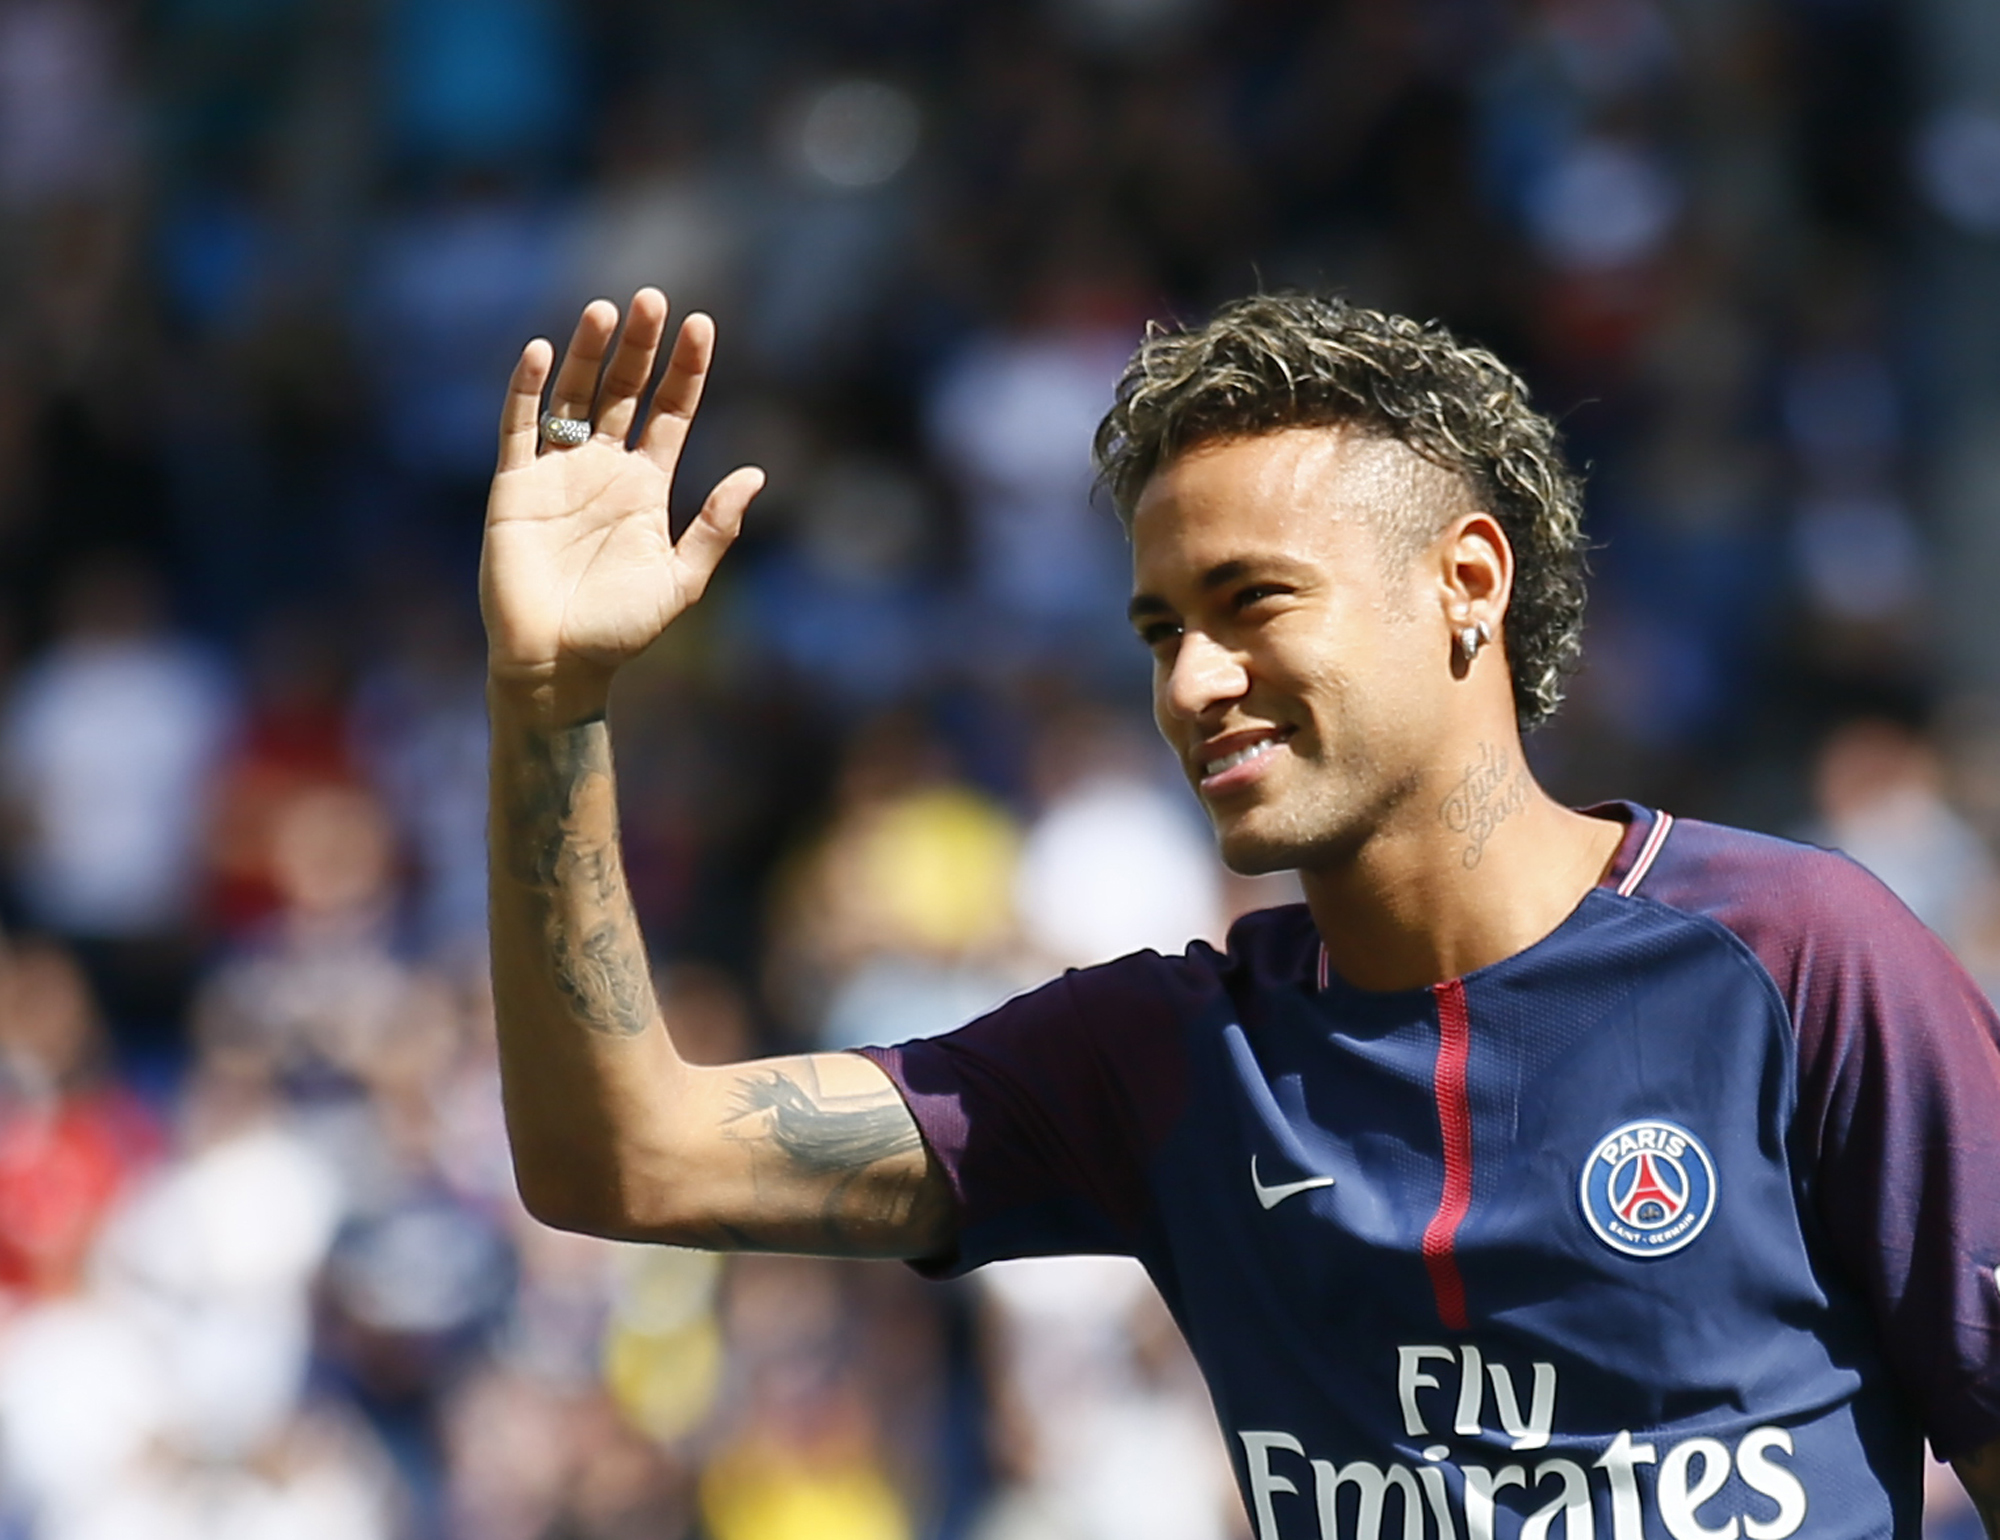 Neymar tras su presentación en PSG: "El cariño que recibí aquí fue surreal"